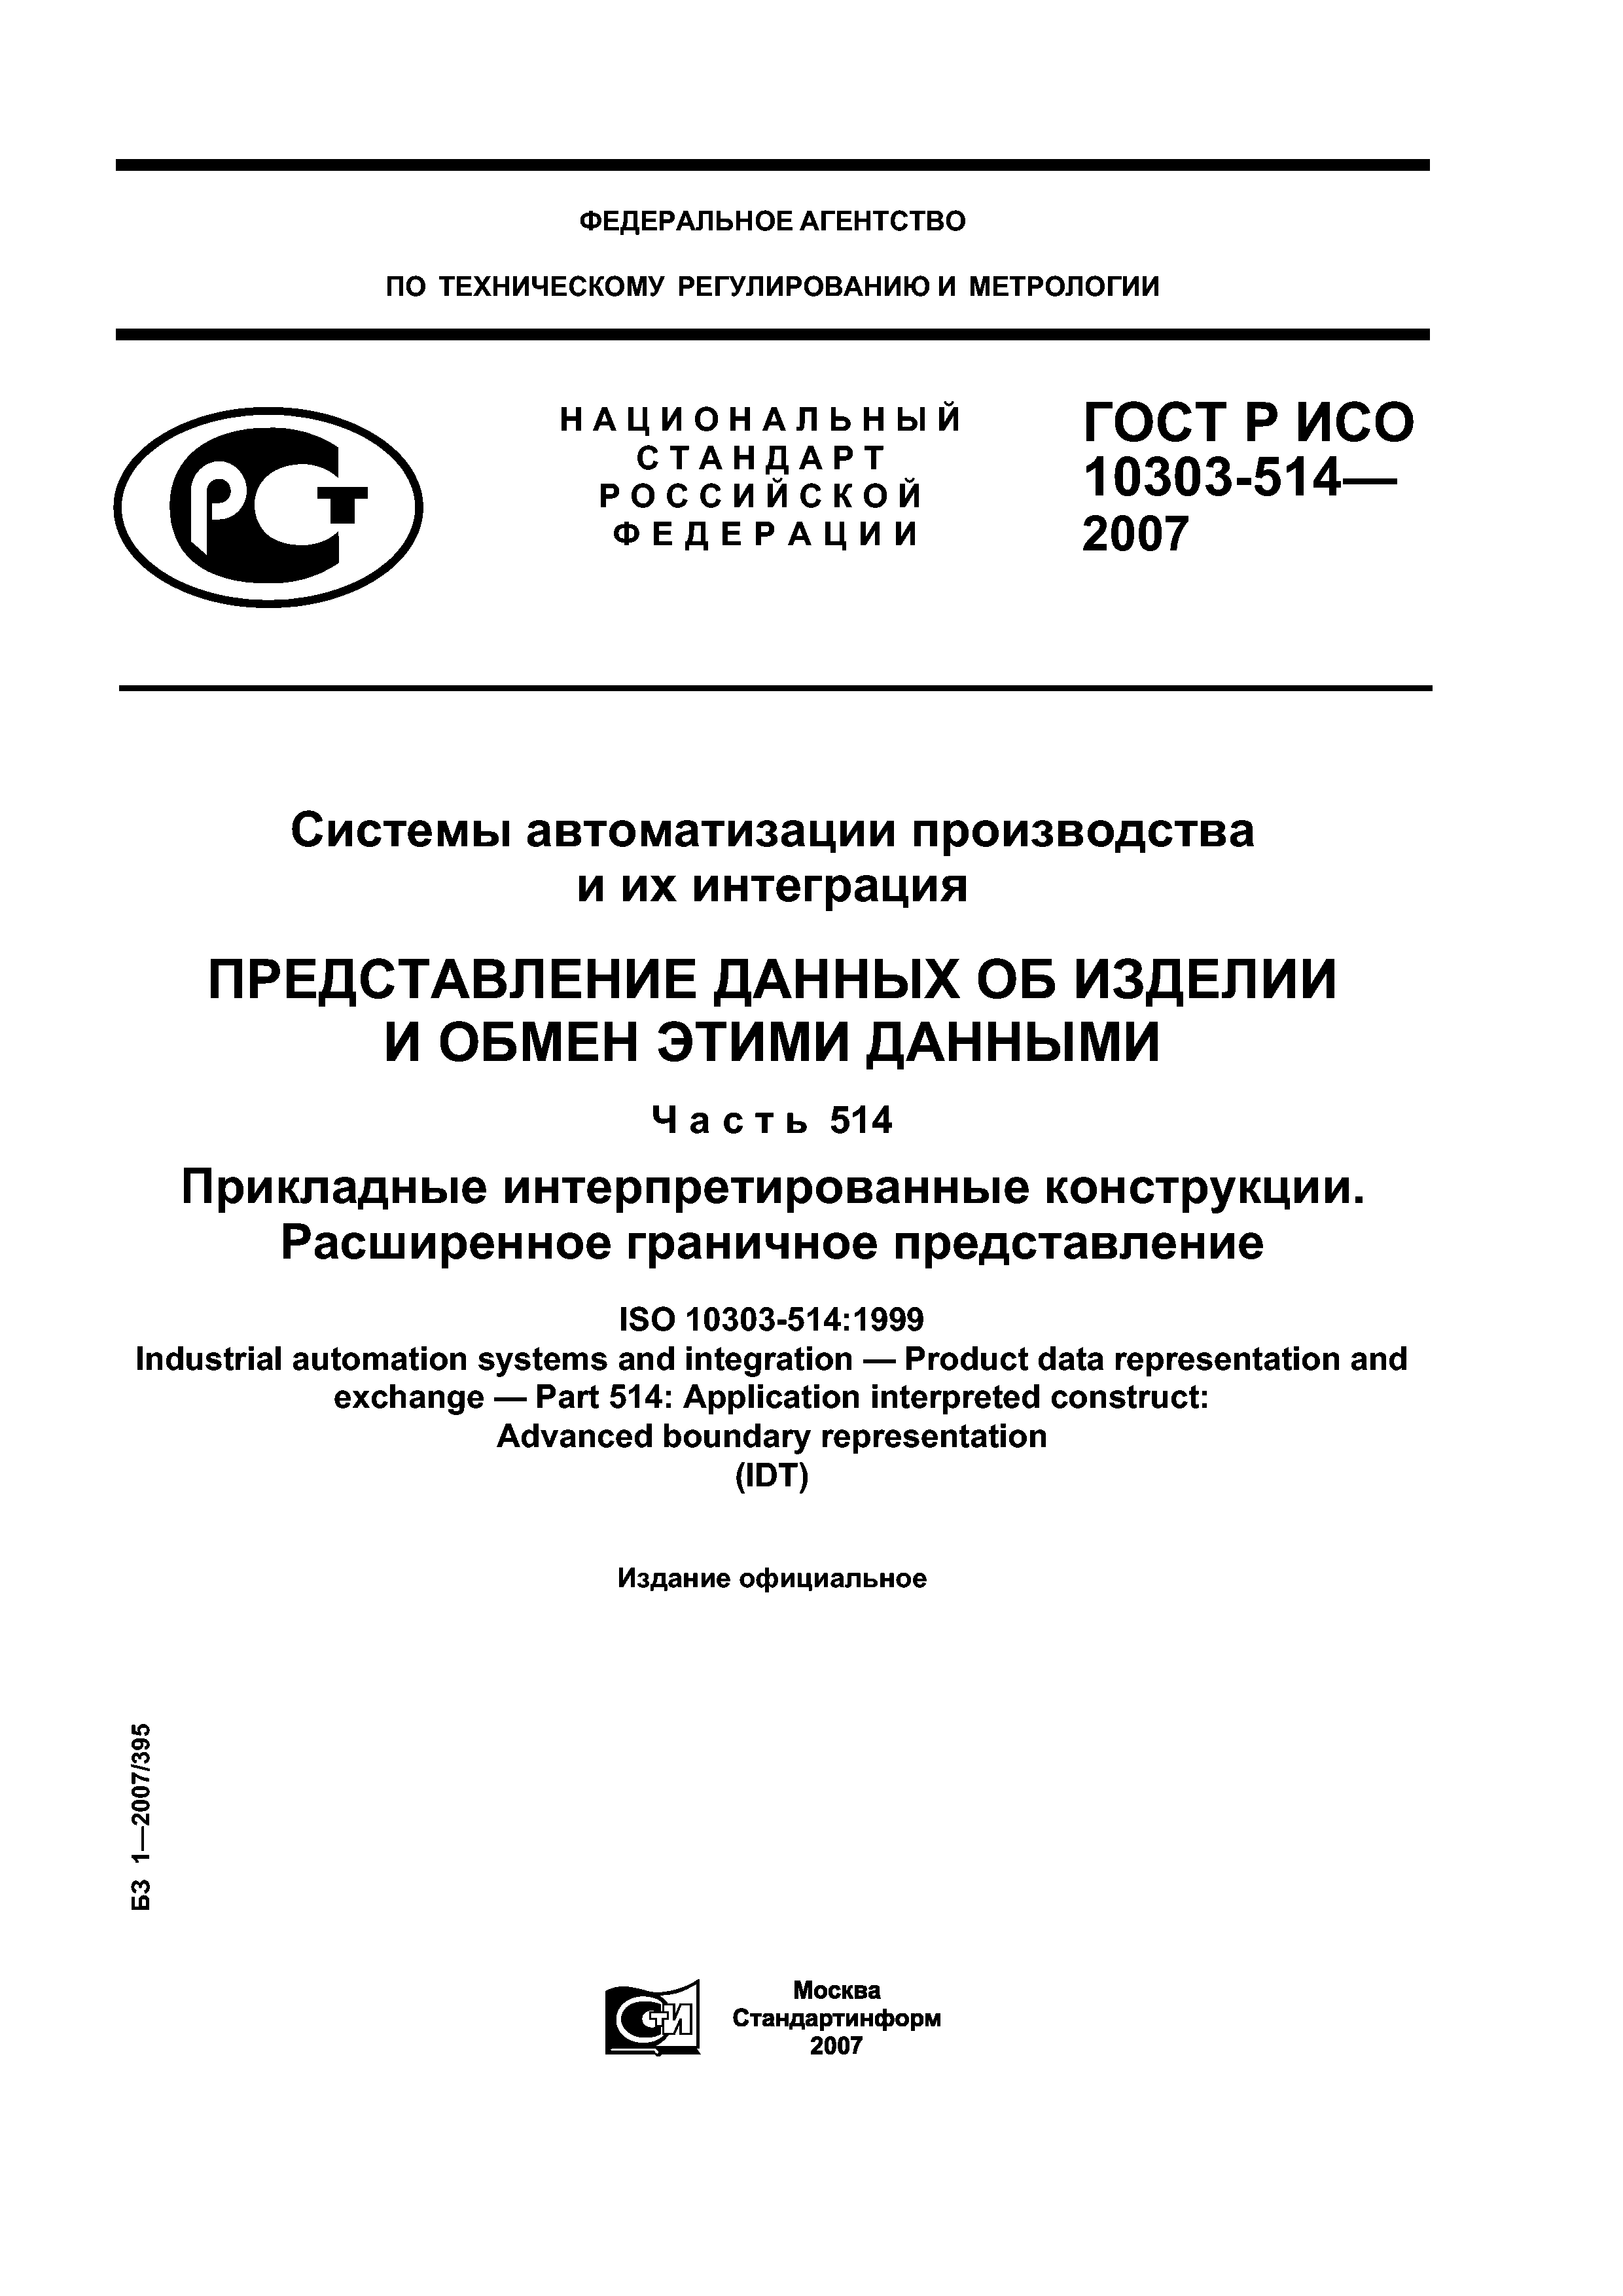 ГОСТ Р ИСО 10303-514-2007